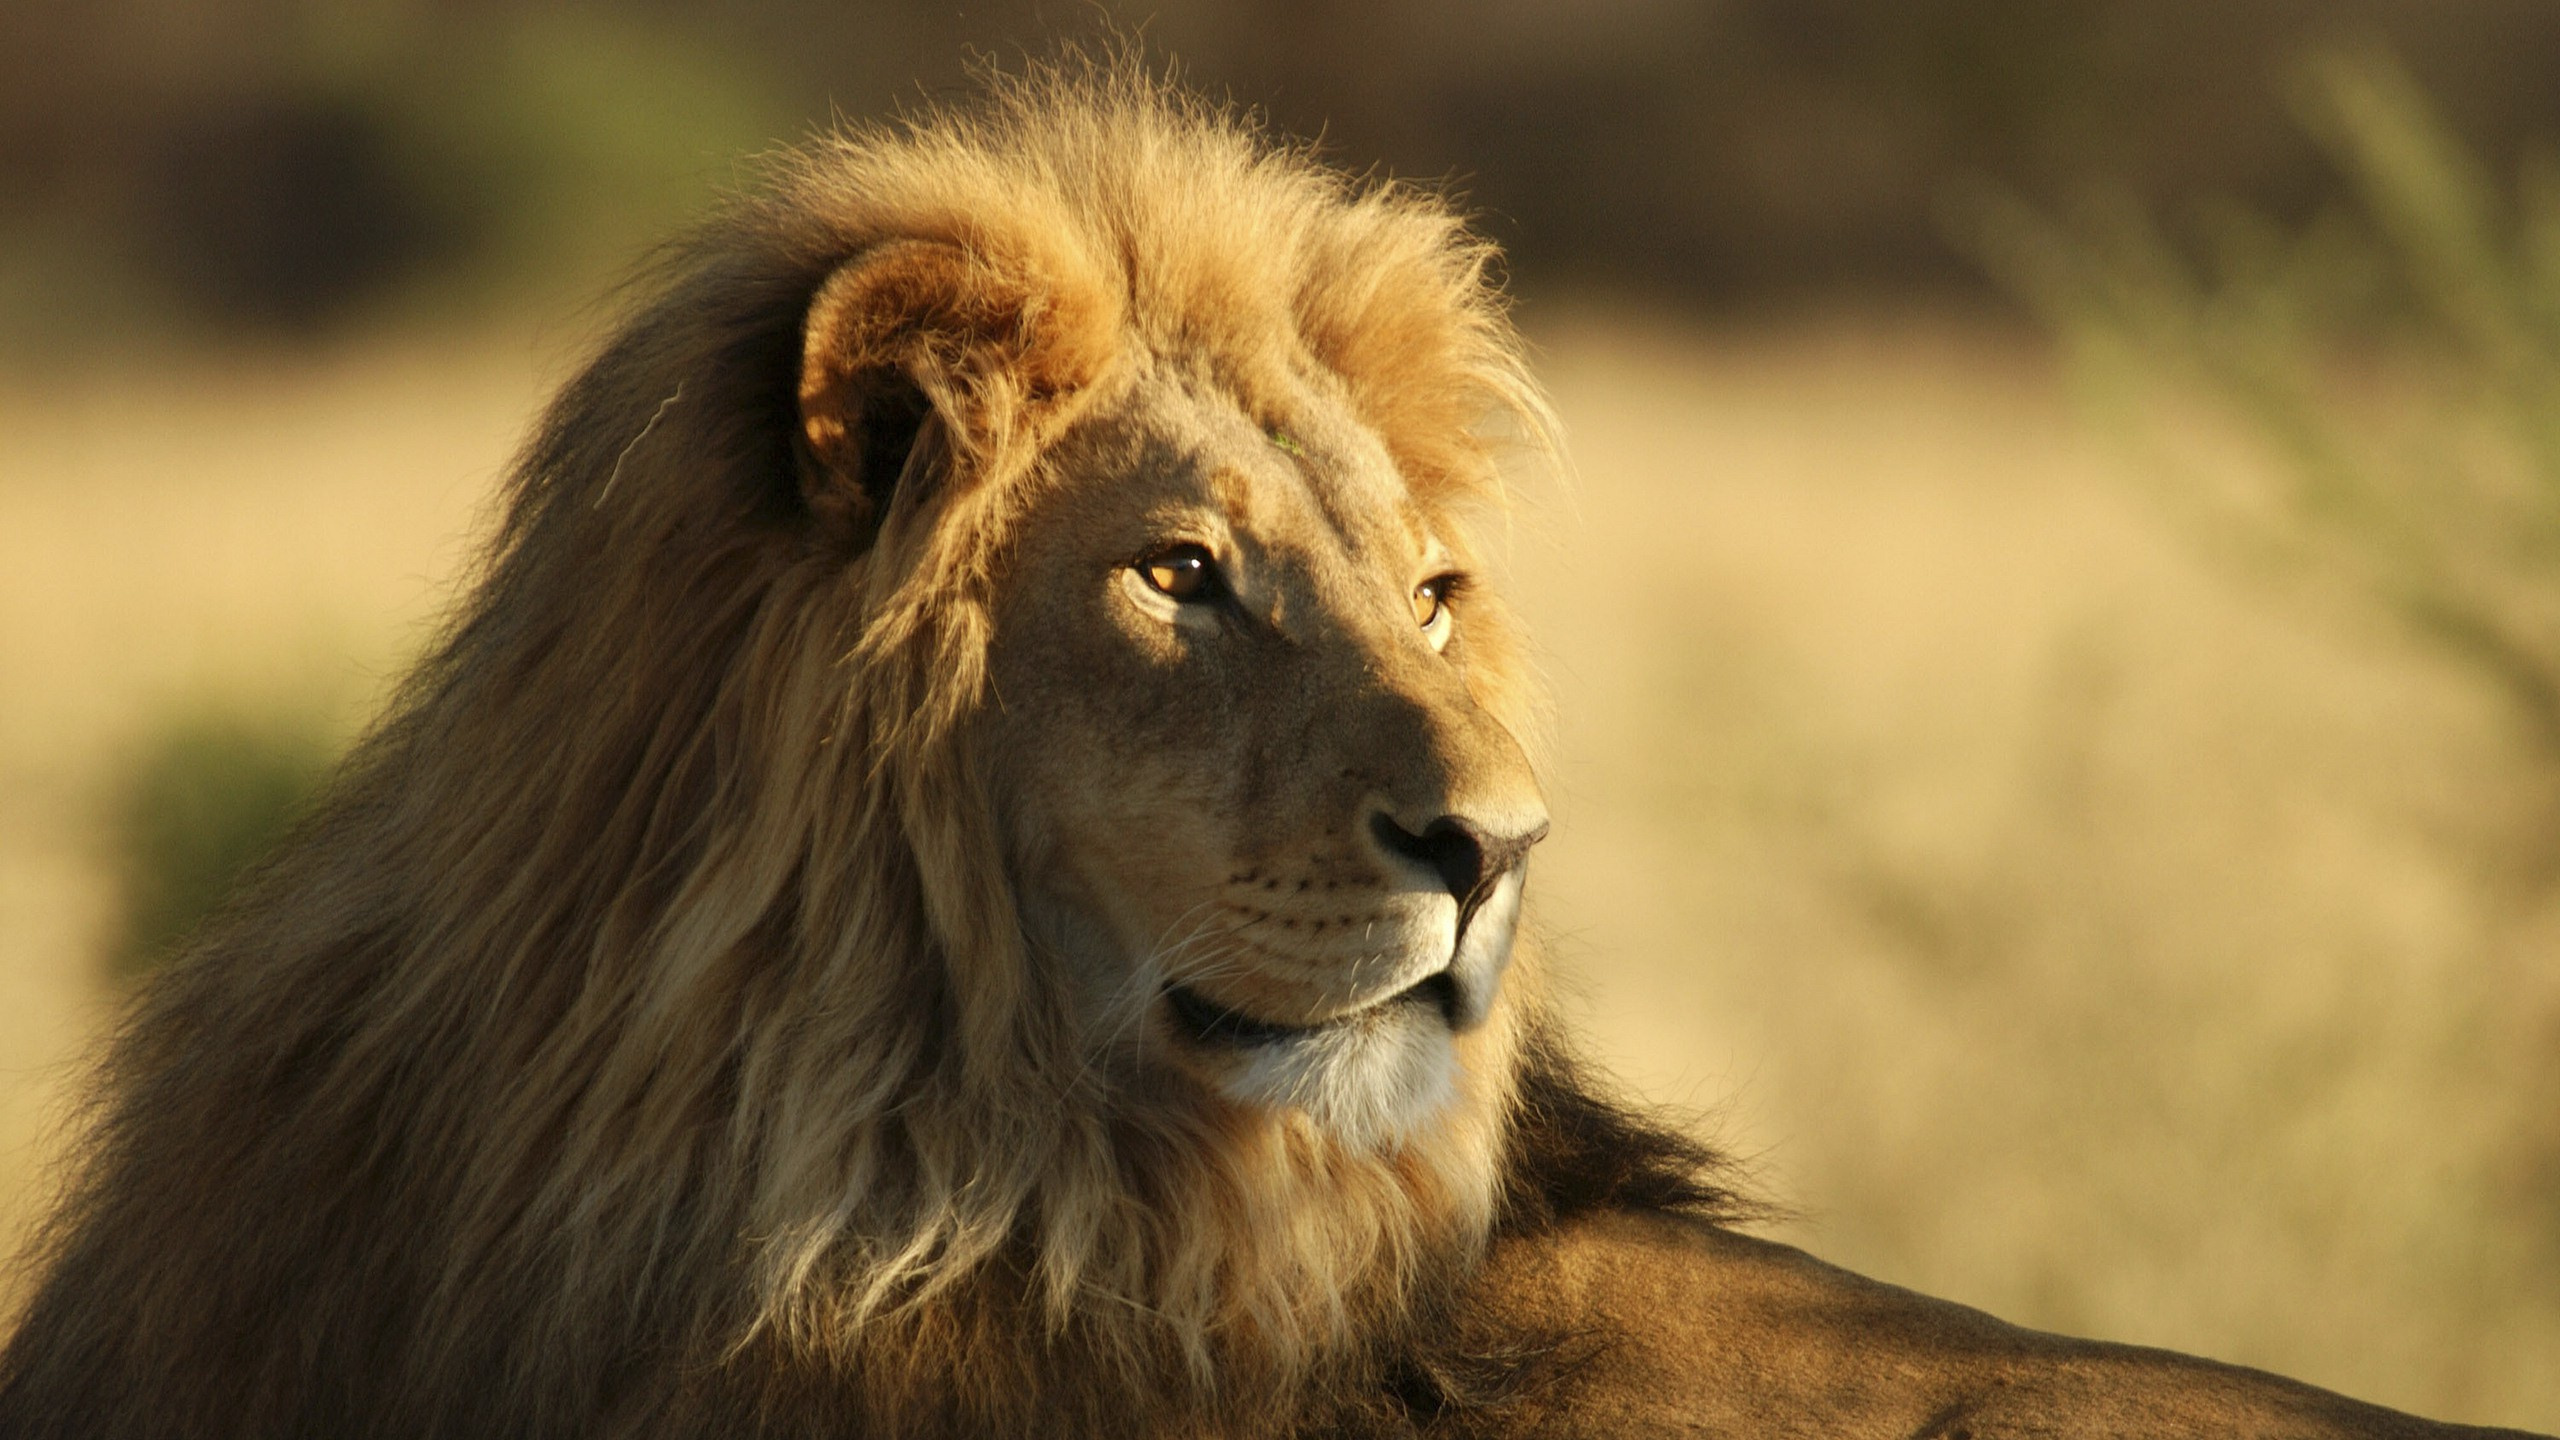 狮子, 野生动物, 马赛马的狮子, 陆地动物, 大型猫科动物 壁纸 2560x1440 允许